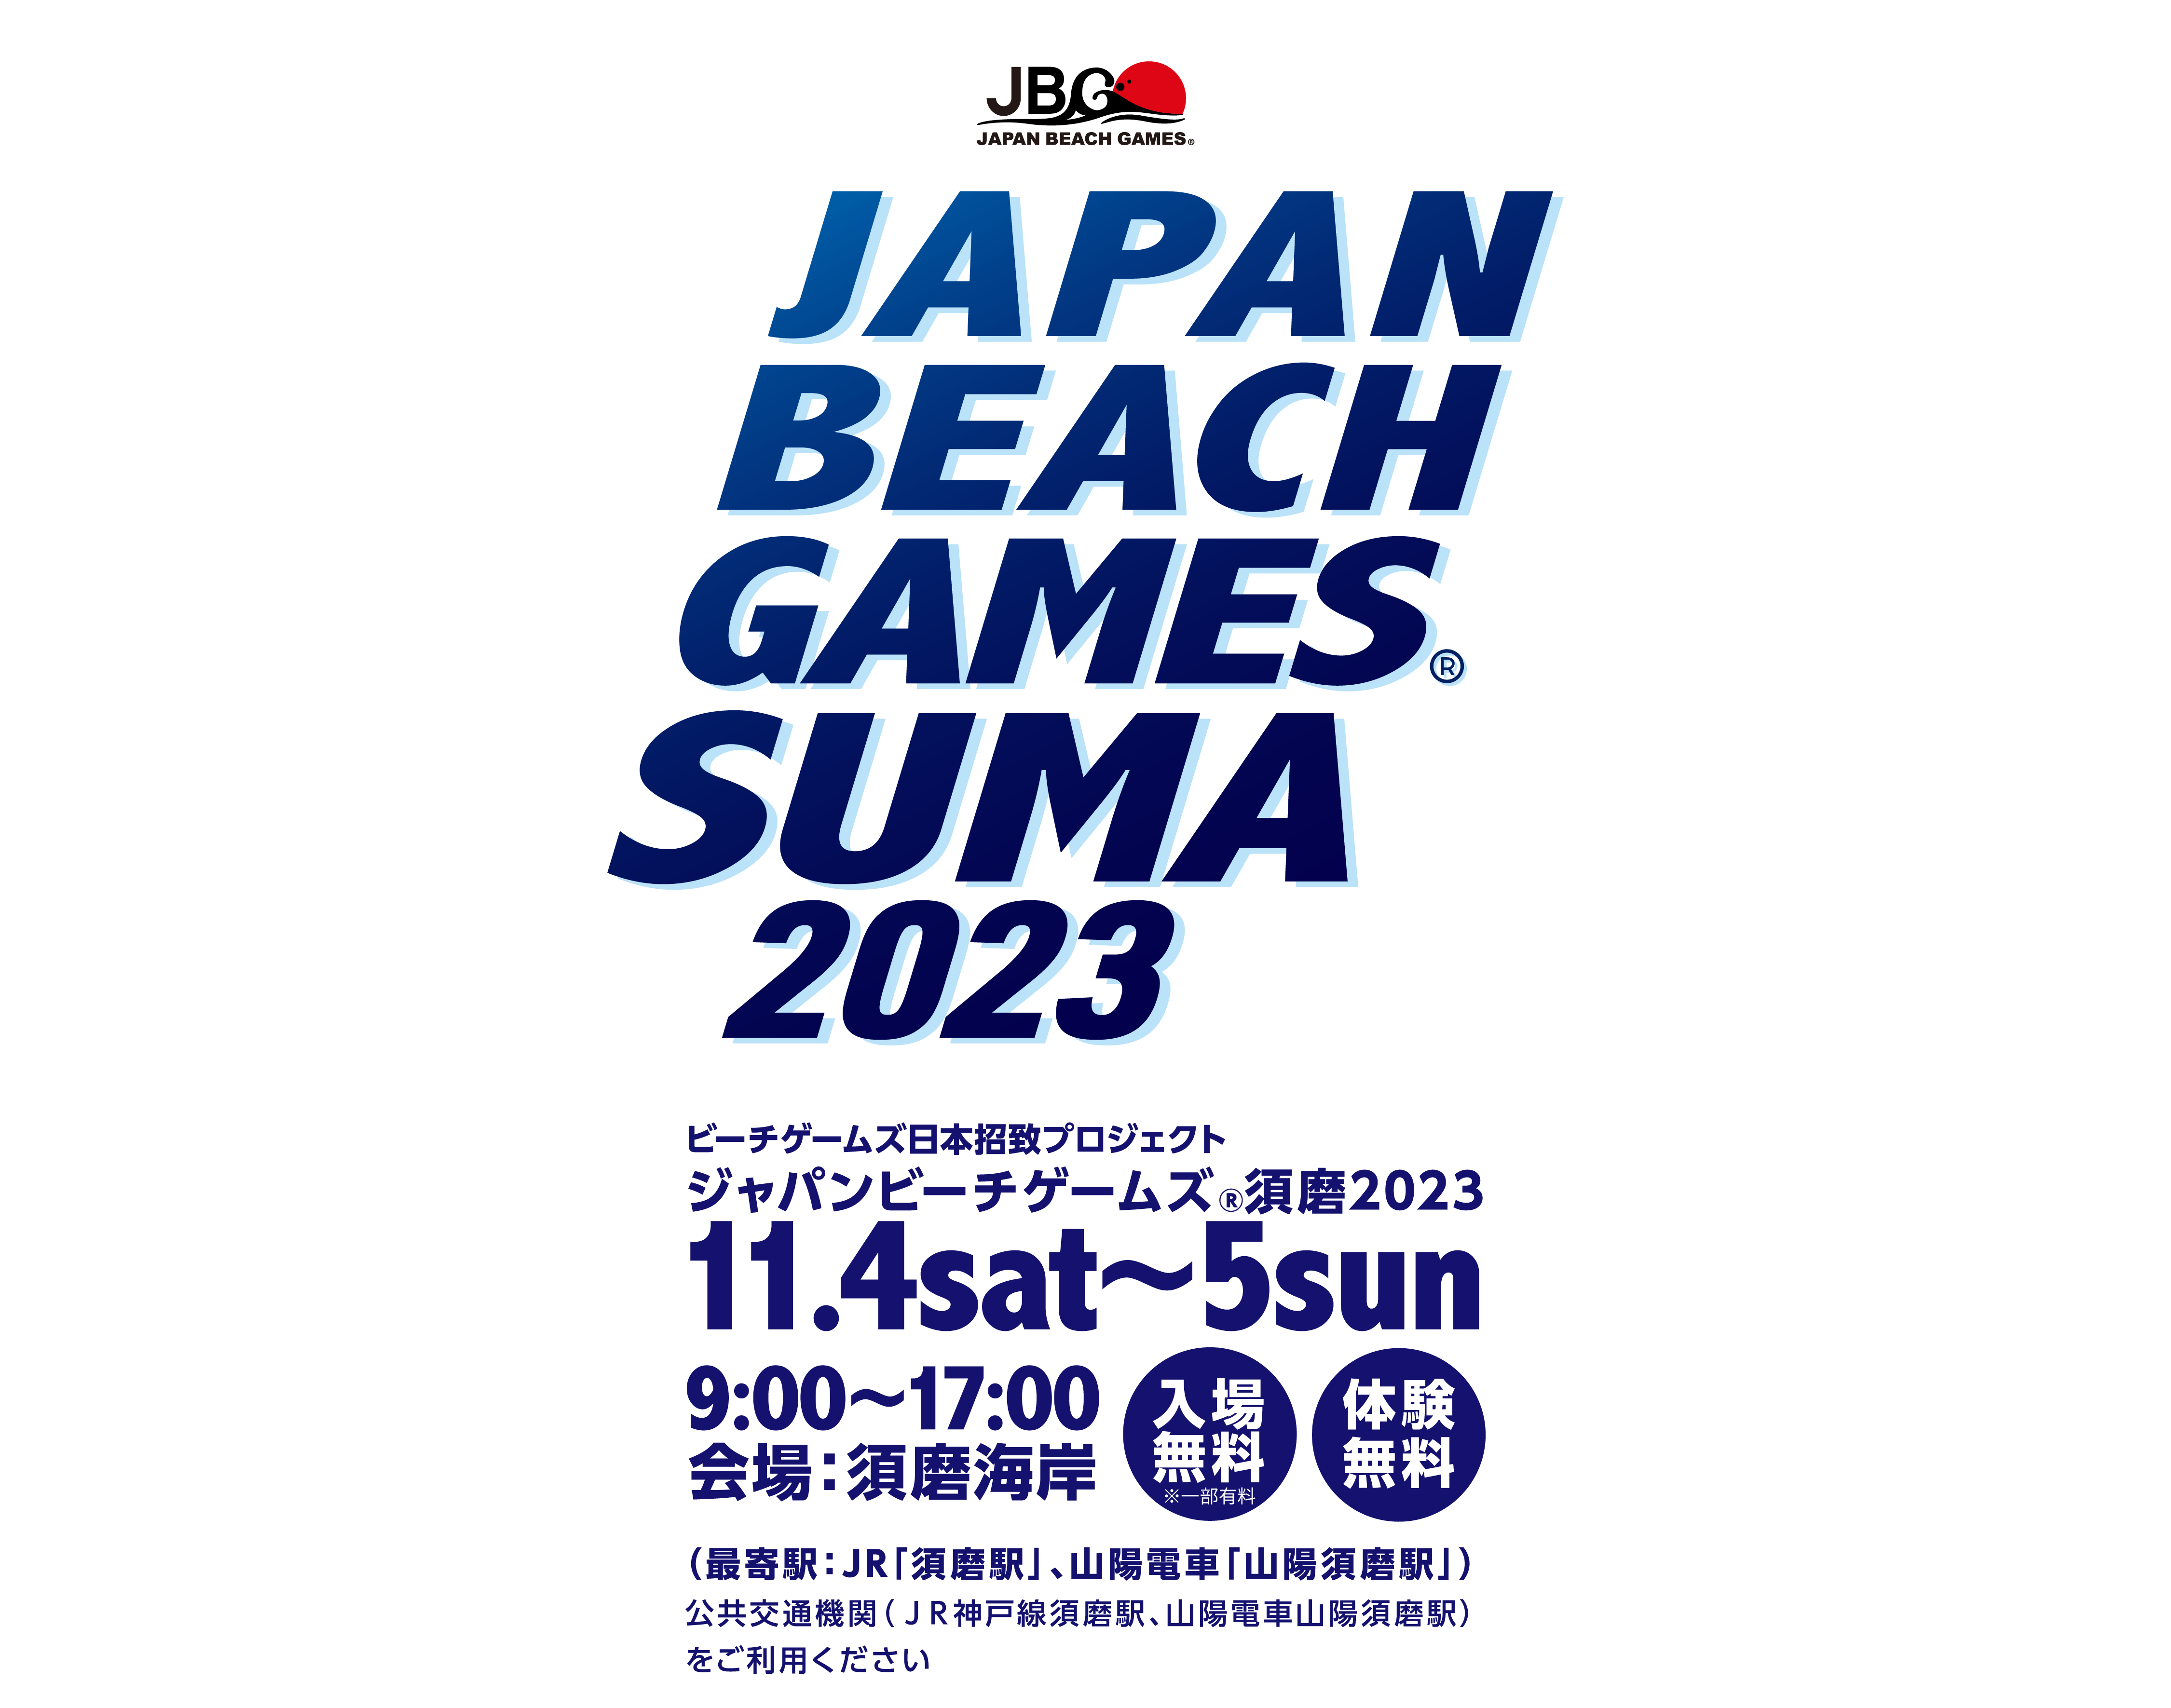 ビーチゲームズ日本招致プロジェクト「ジャパンビーチゲームズ®須磨2023」2023年11月4日（土）5日（日）兵庫県神戸市の須磨海岸で開催します！